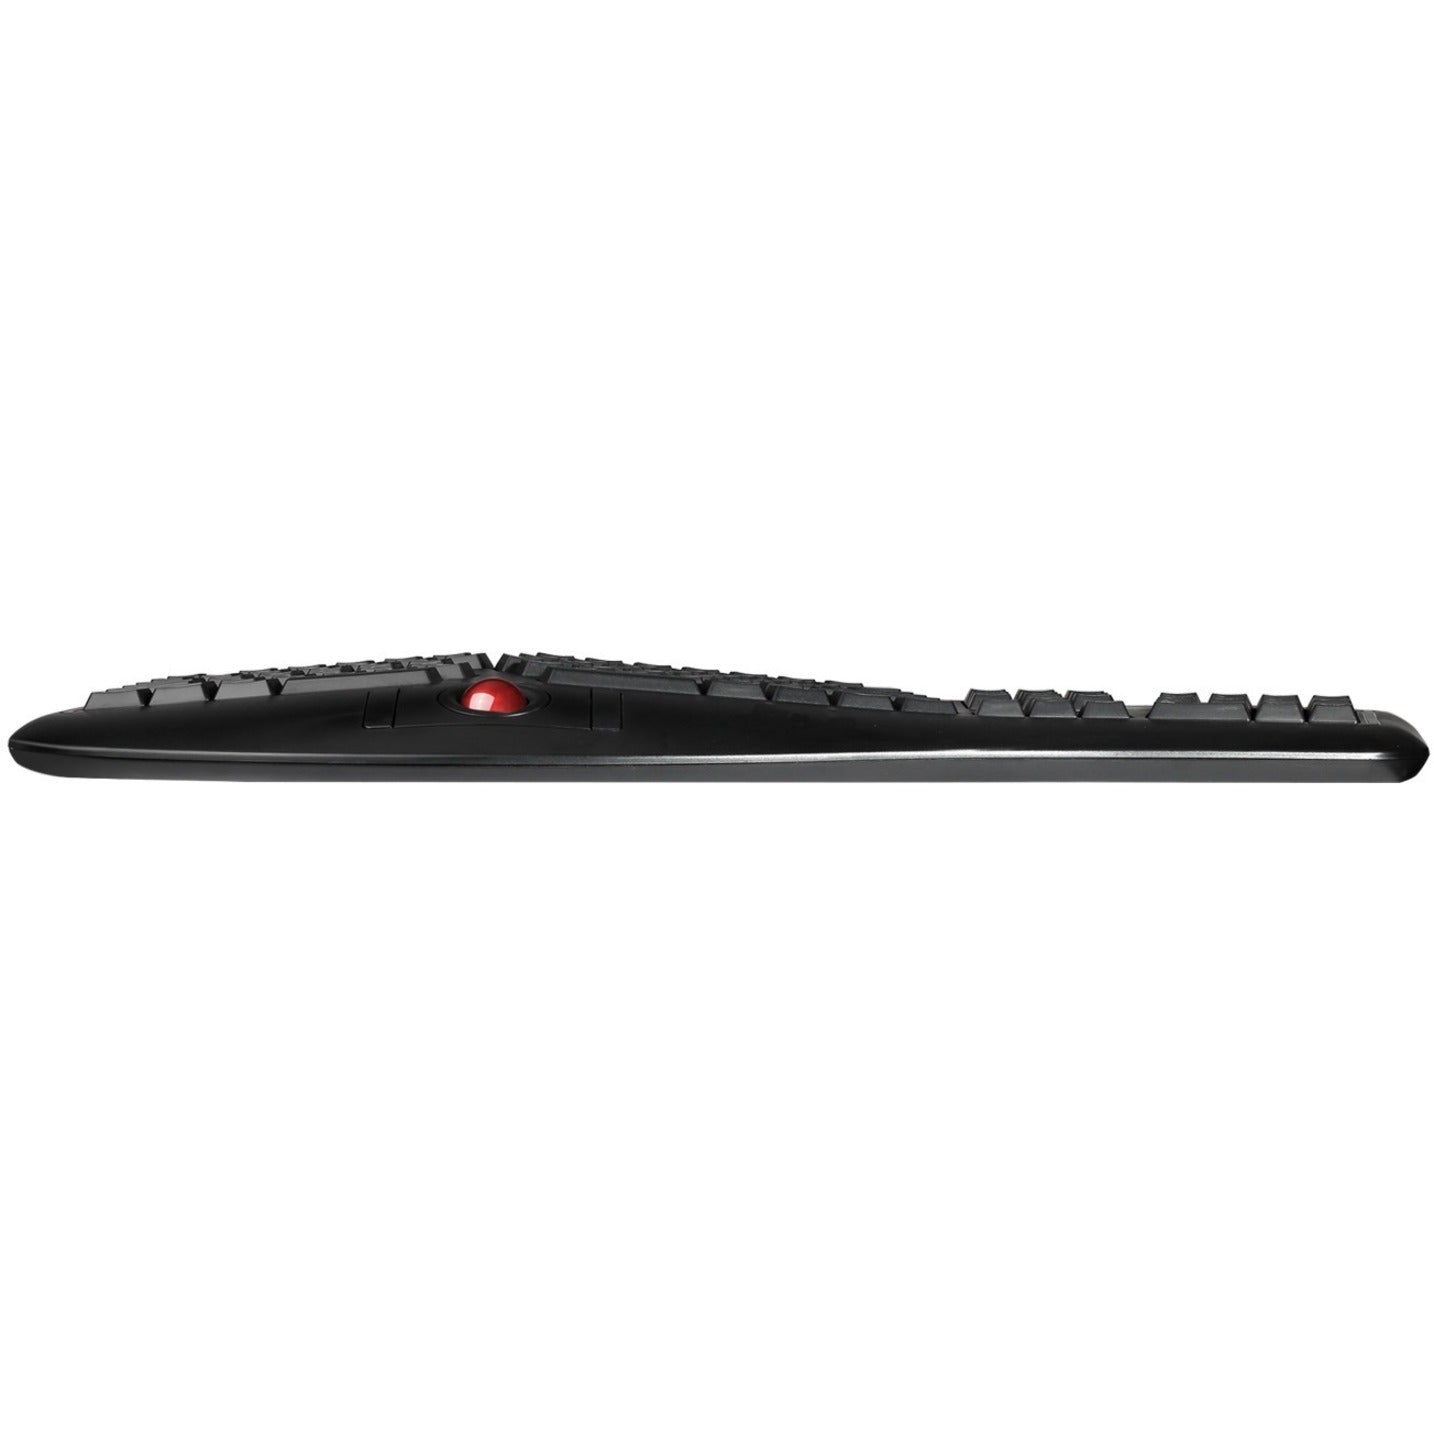 Adesso WKB-3500UB Tru-Form 2.4 GHz Wireless Ergonomic Trackball Keyboard, Split Layout, Palm Rest